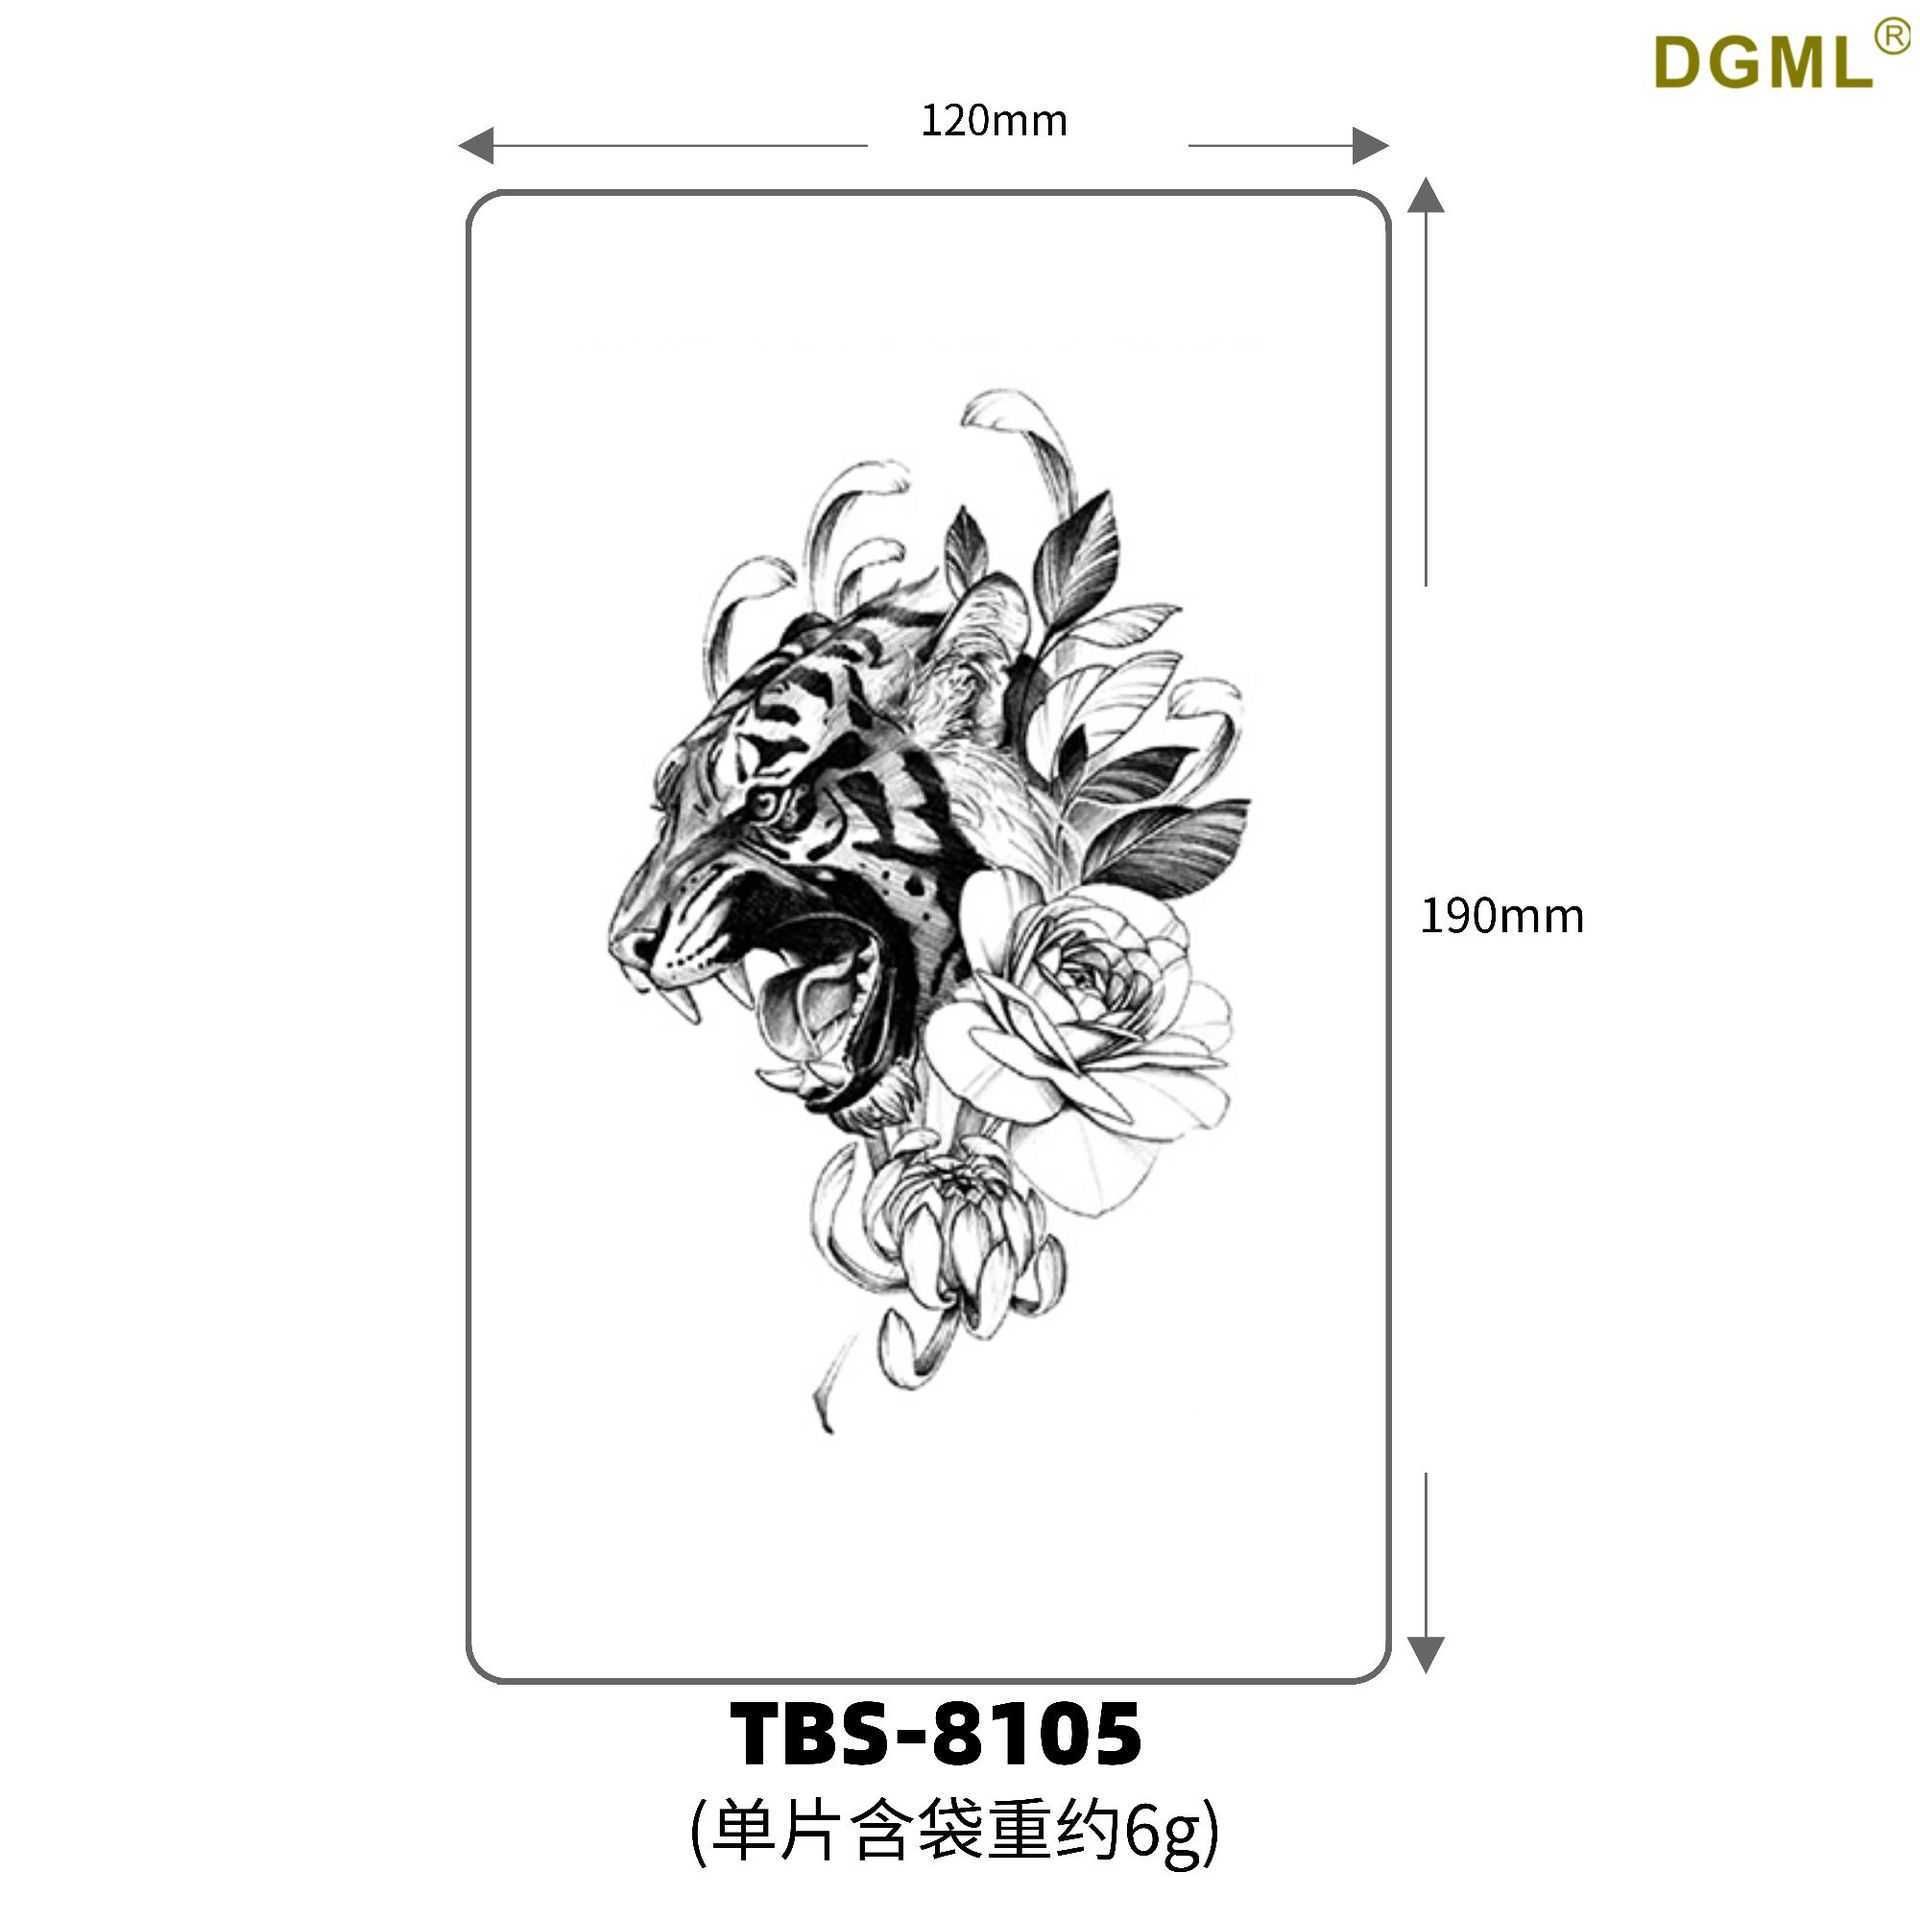 Tbs-8105-19x21cm